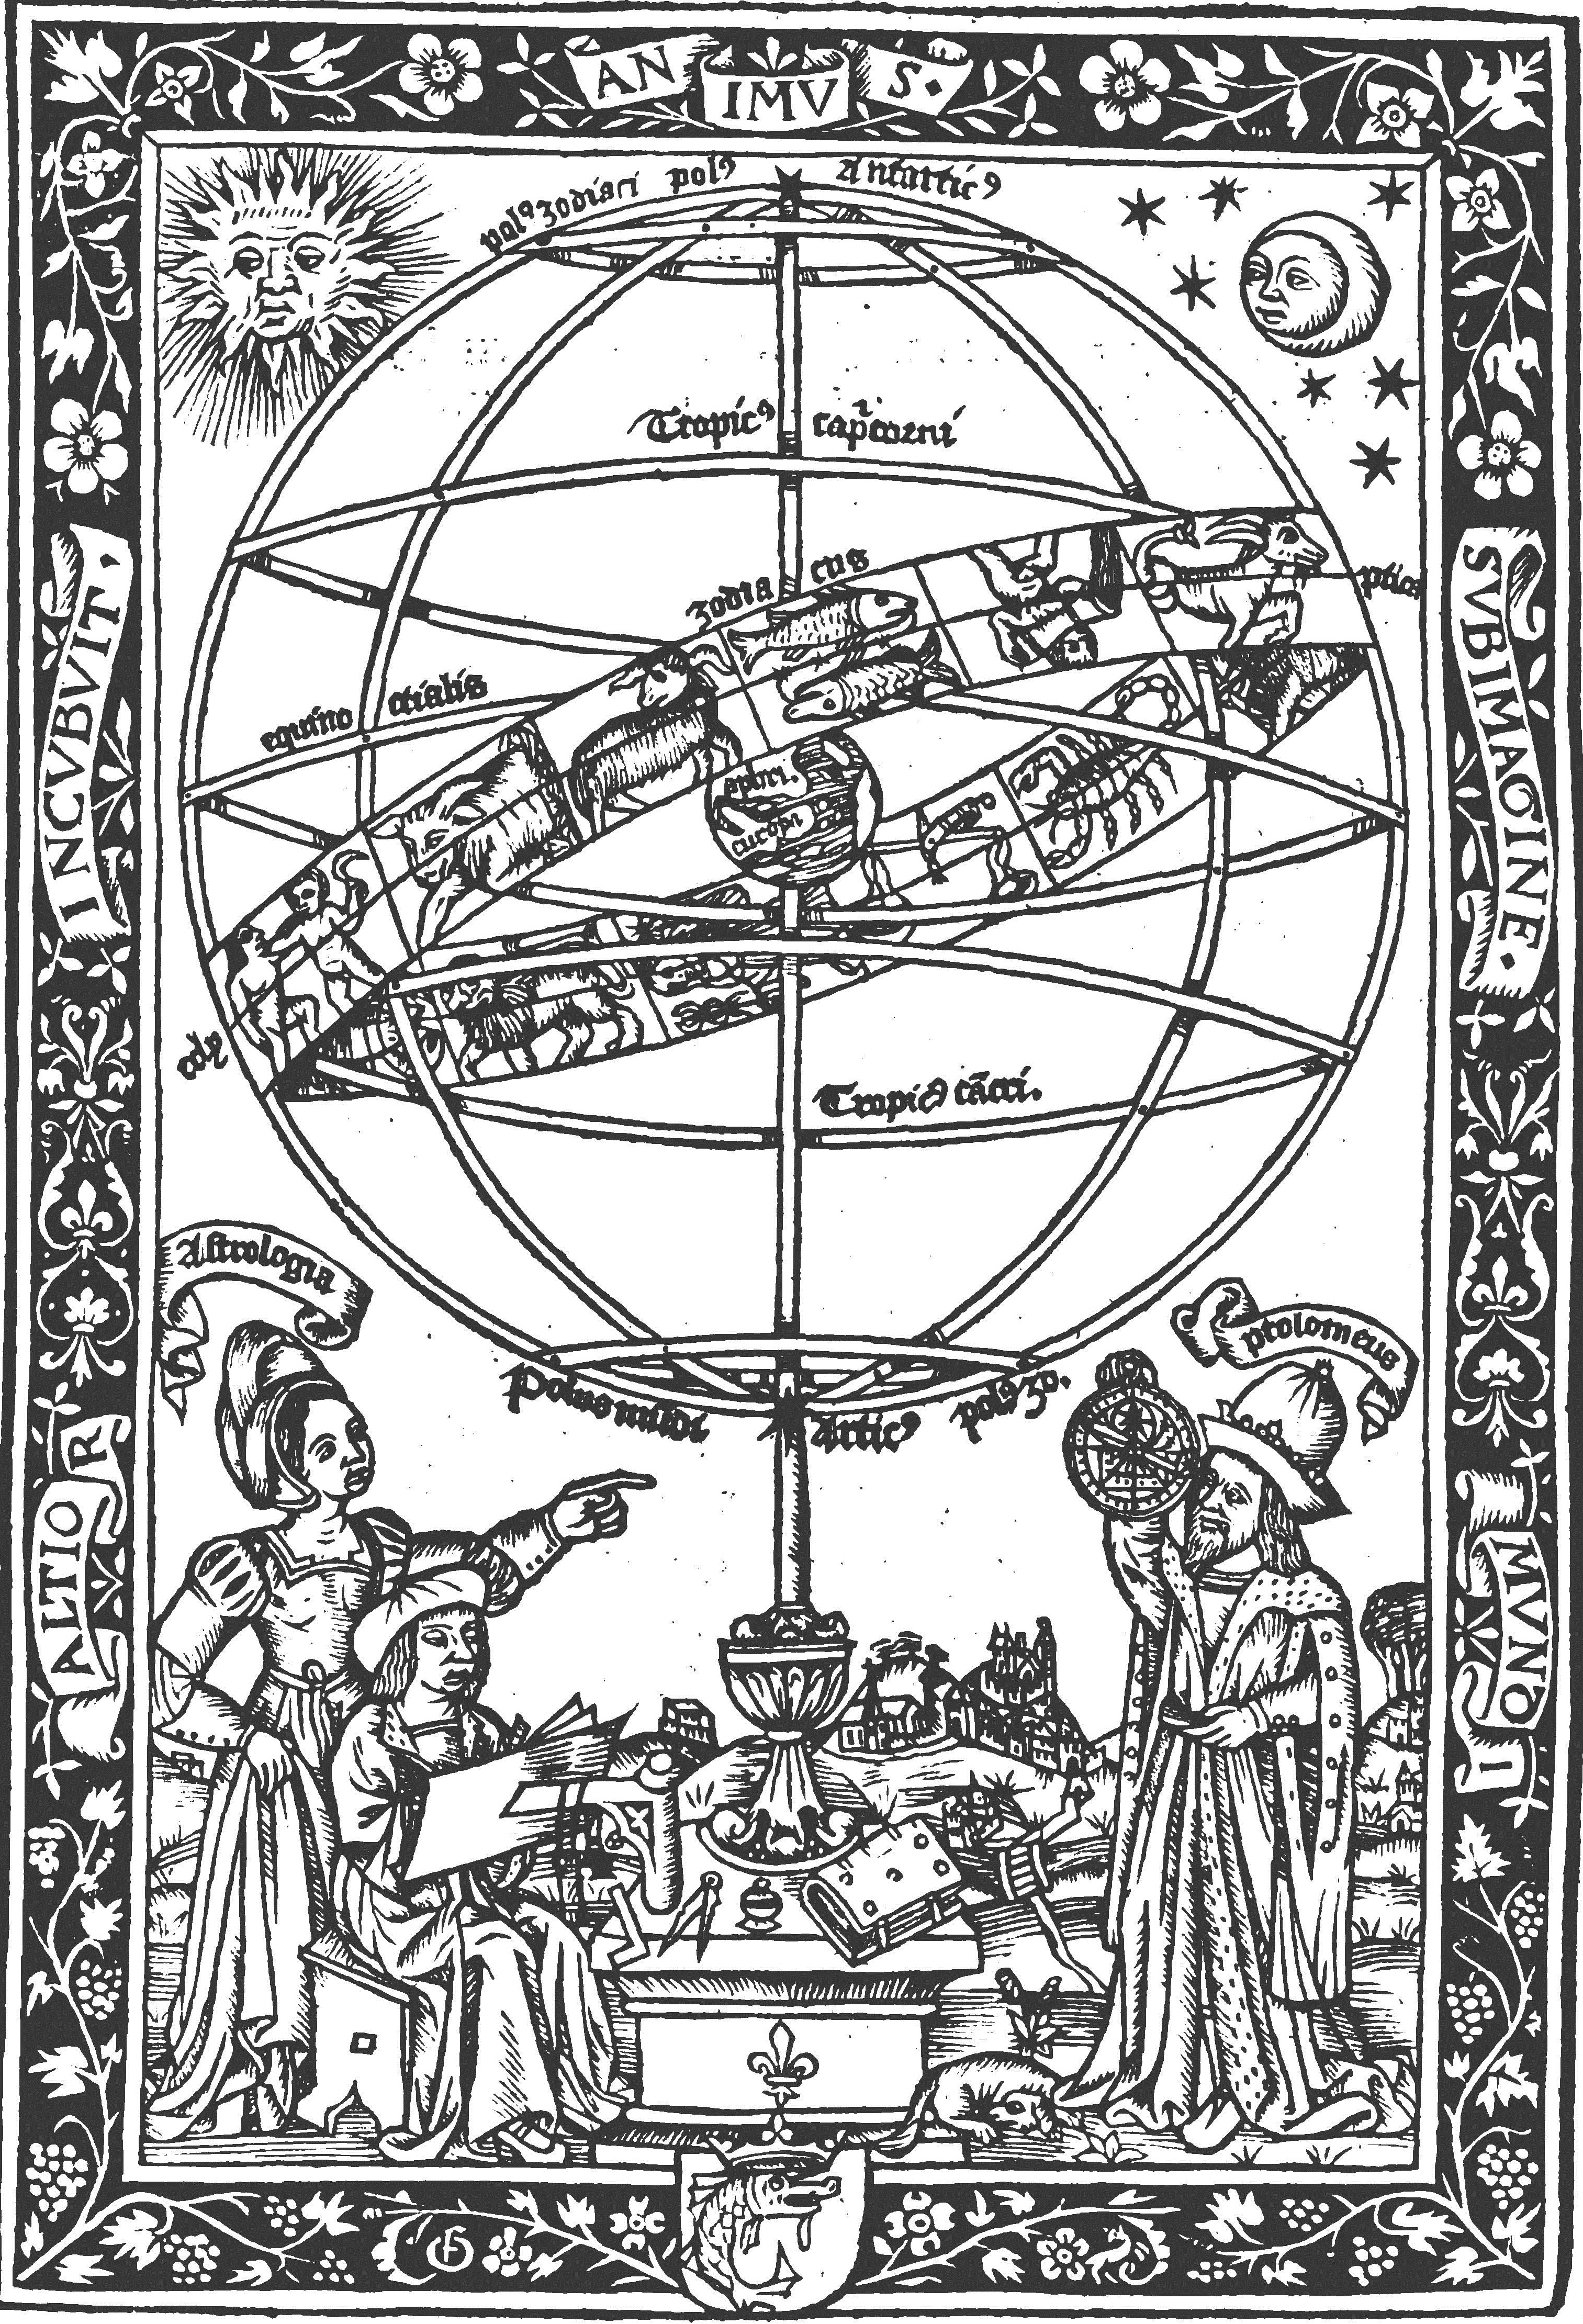 05- Georg von Peuerbach. Theoricarum nouarum Textus Georgii Purbachij, 1515